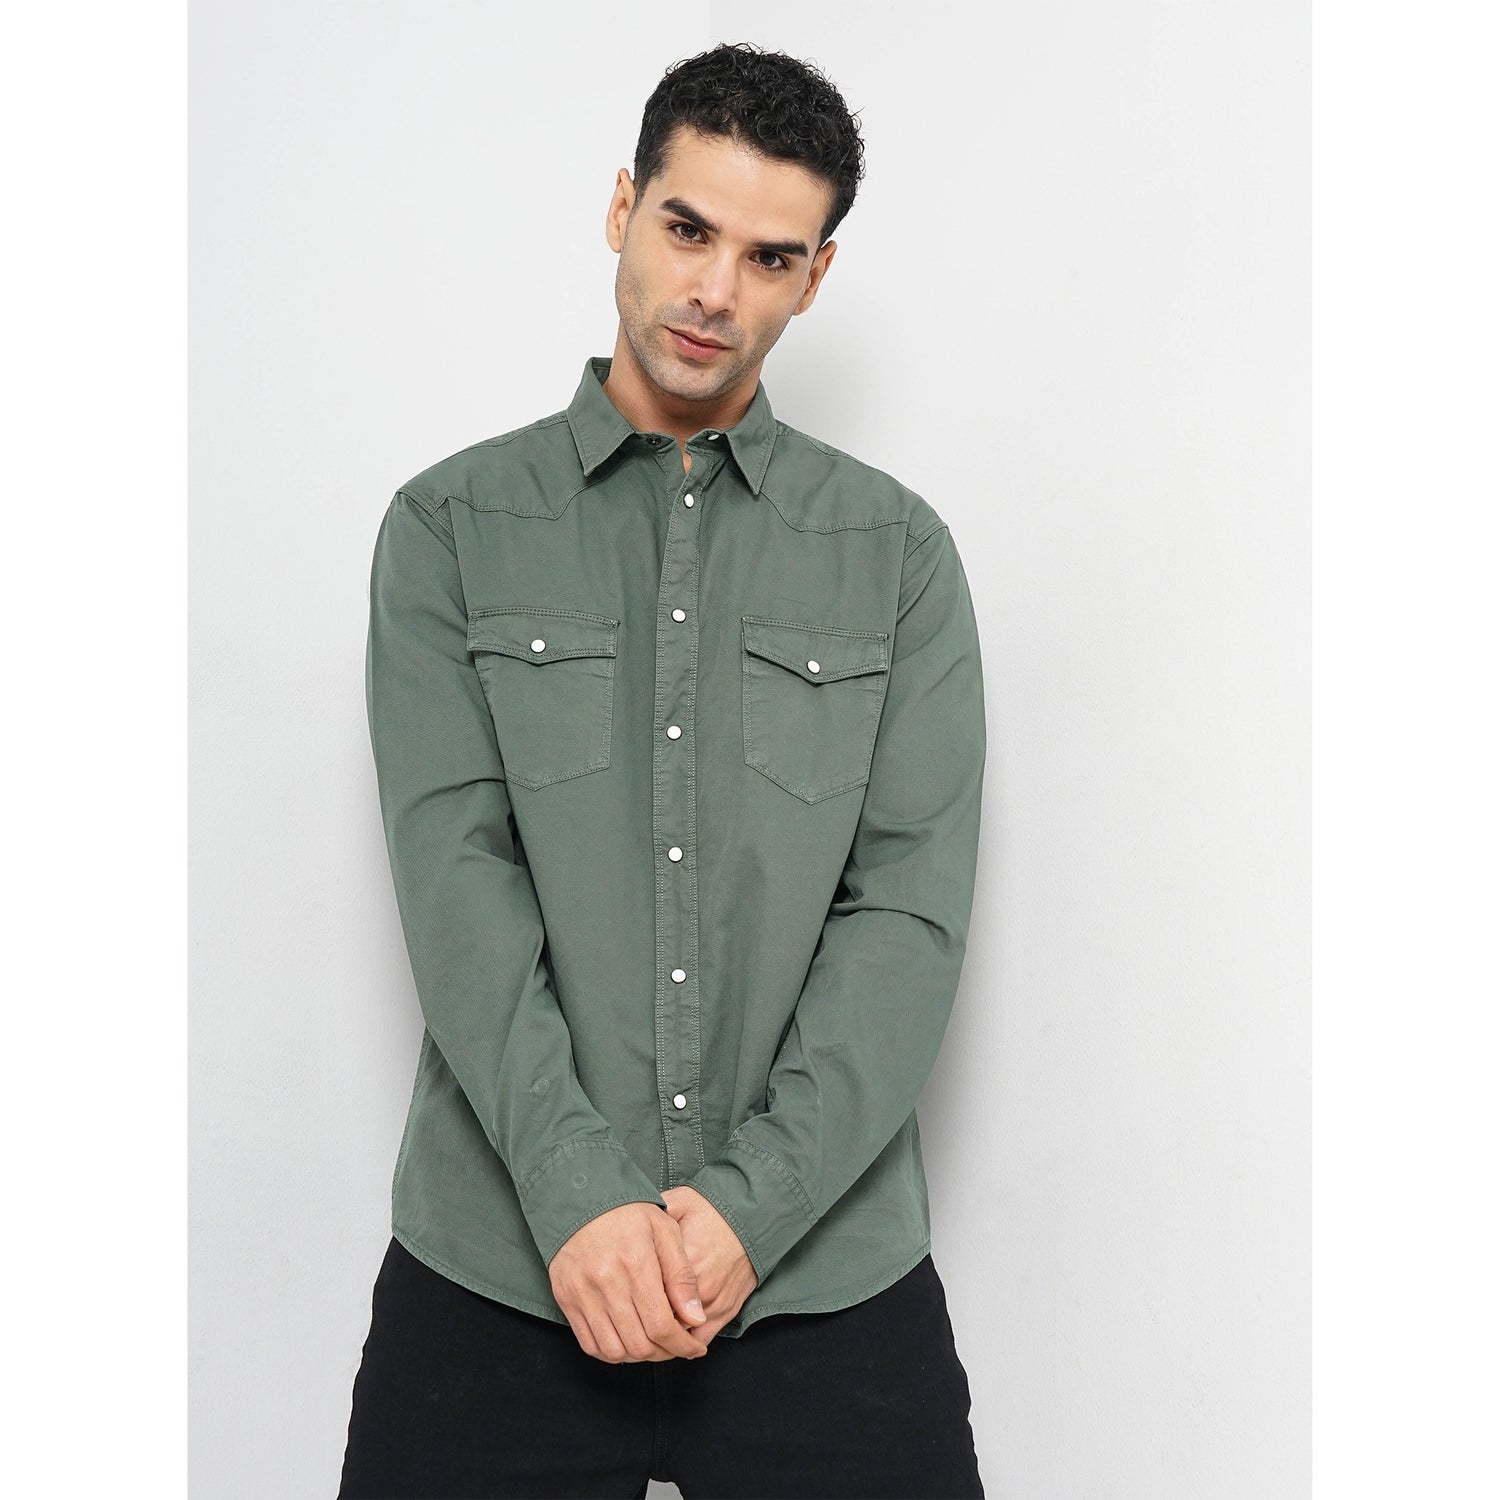 Men's Olive Solid Regular Fit Cotton Shirt (FAWESTOD)